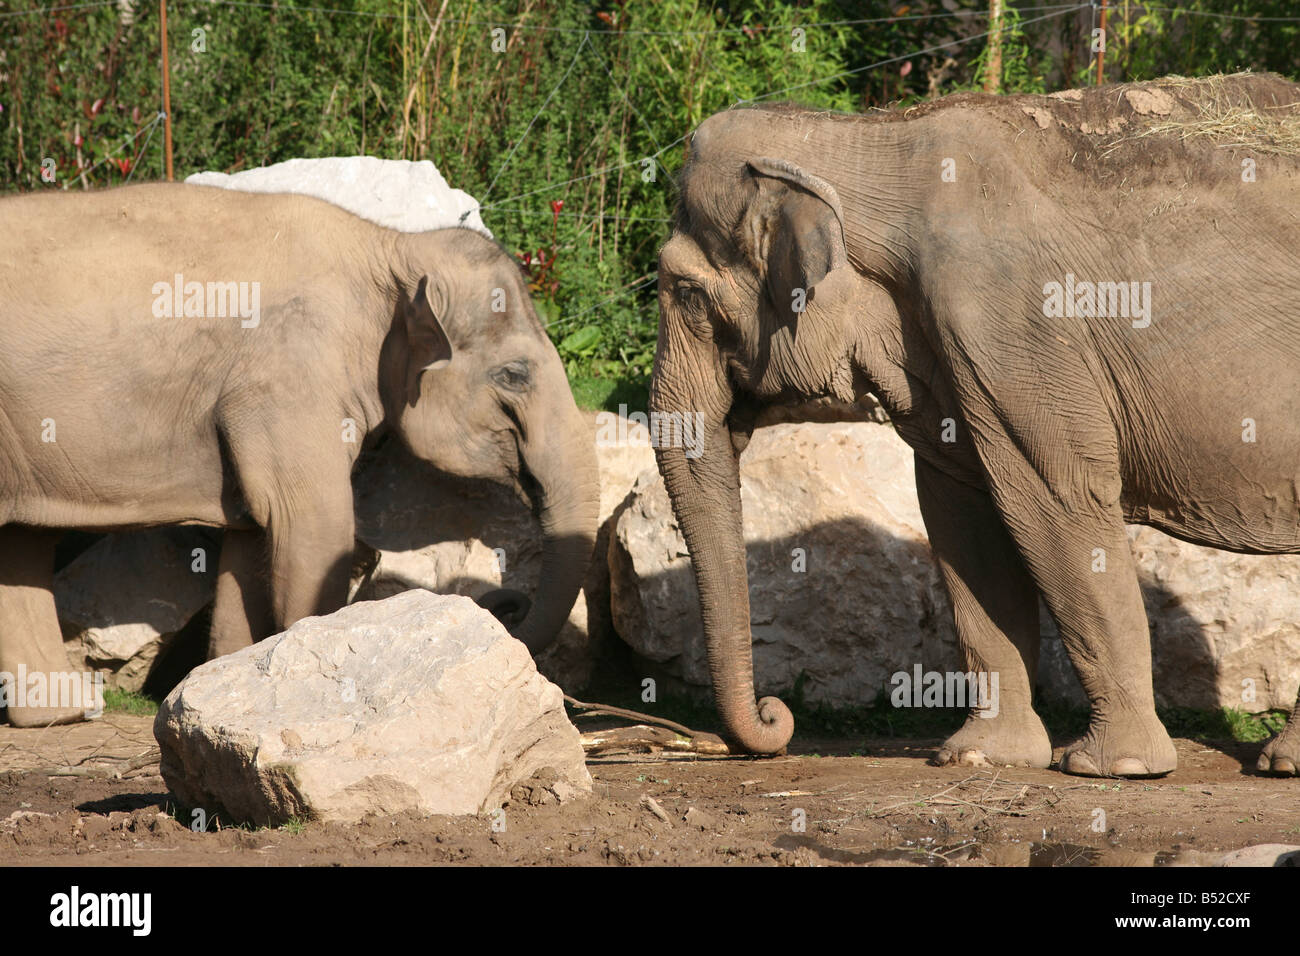 Indian Elephant, Elephas maximus indicus Stock Photo